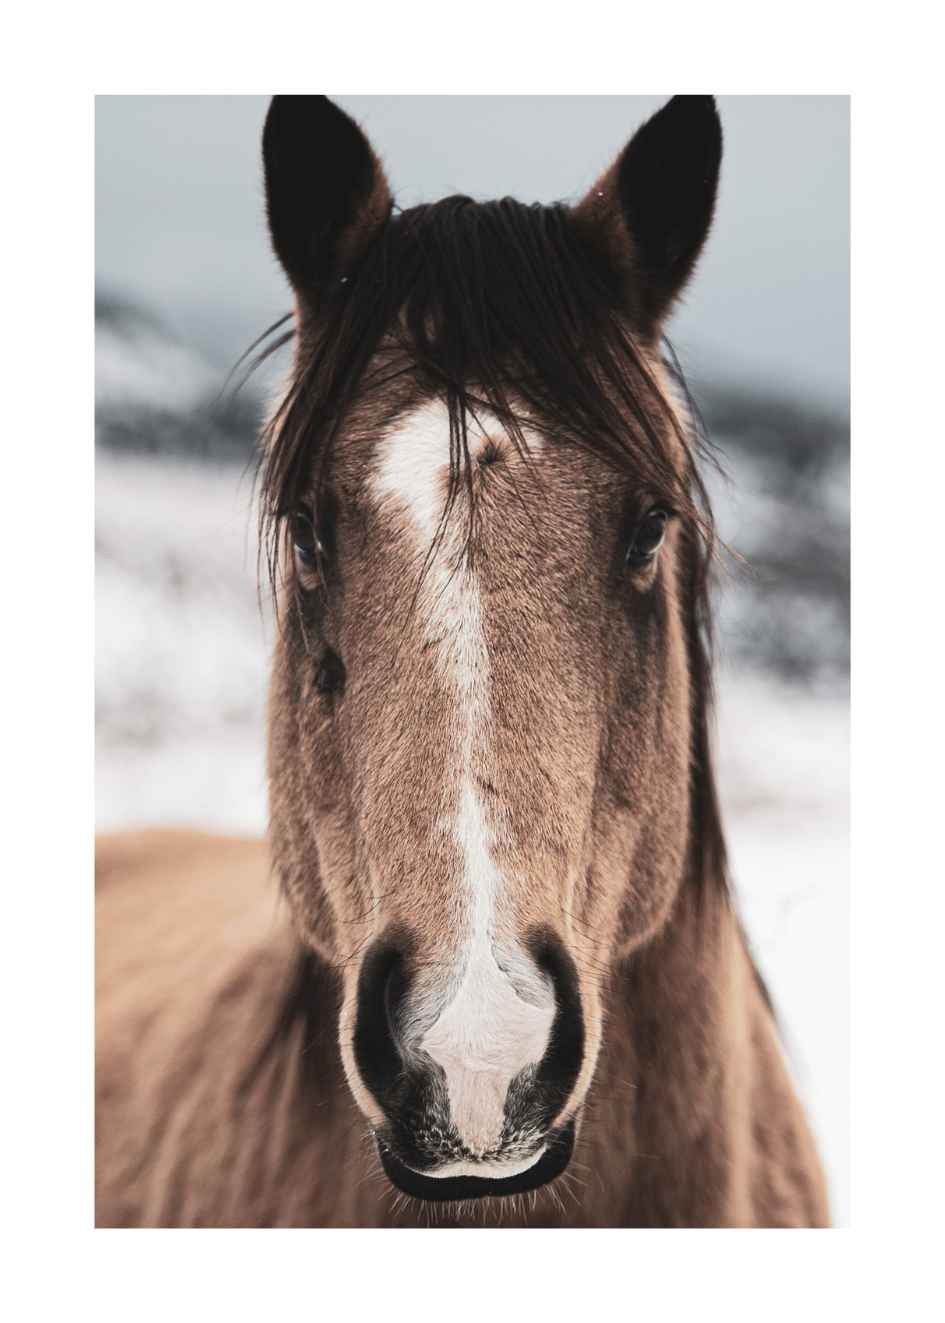 bilder von pferden